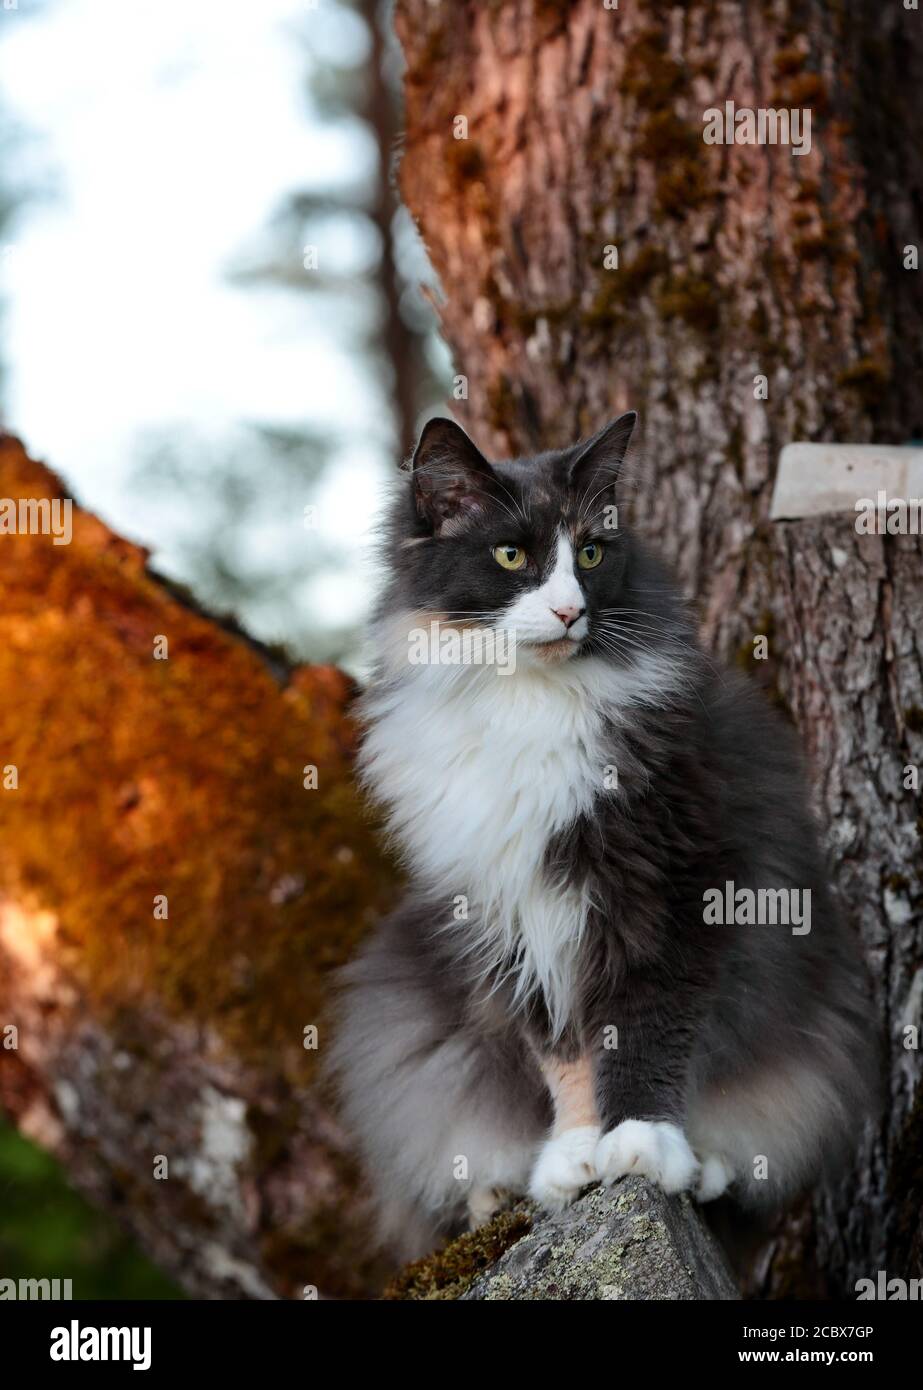 Hübsche norwegische Waldkatze, die vor einem Ahorn sitzt Baumstamm Stockfoto